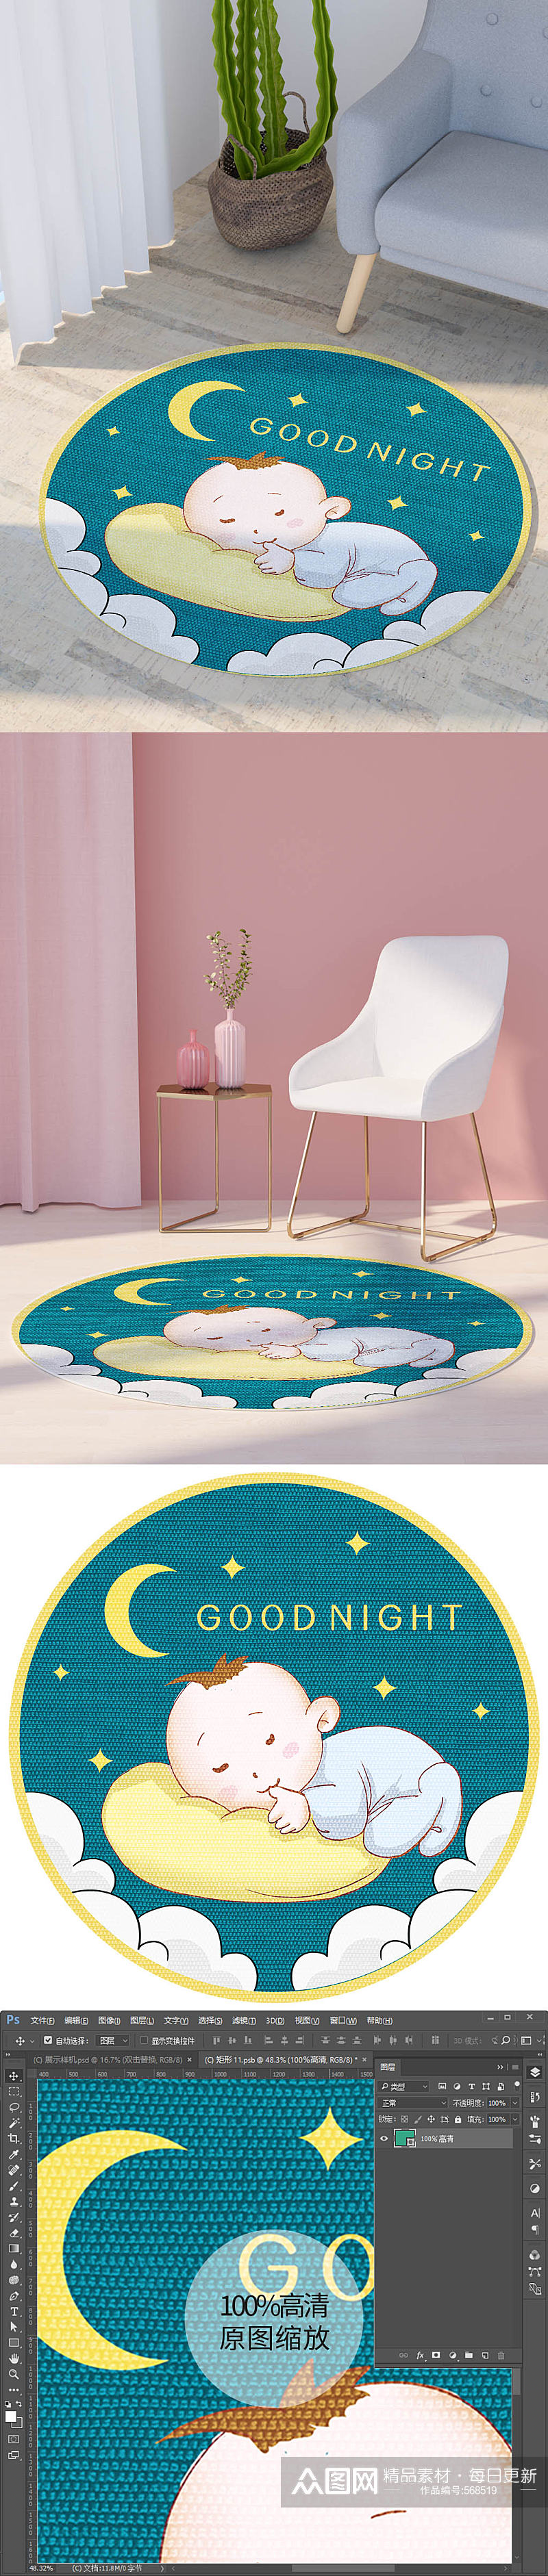 儿童房可爱睡眠小宝宝星空月亮圆形地毯图素材